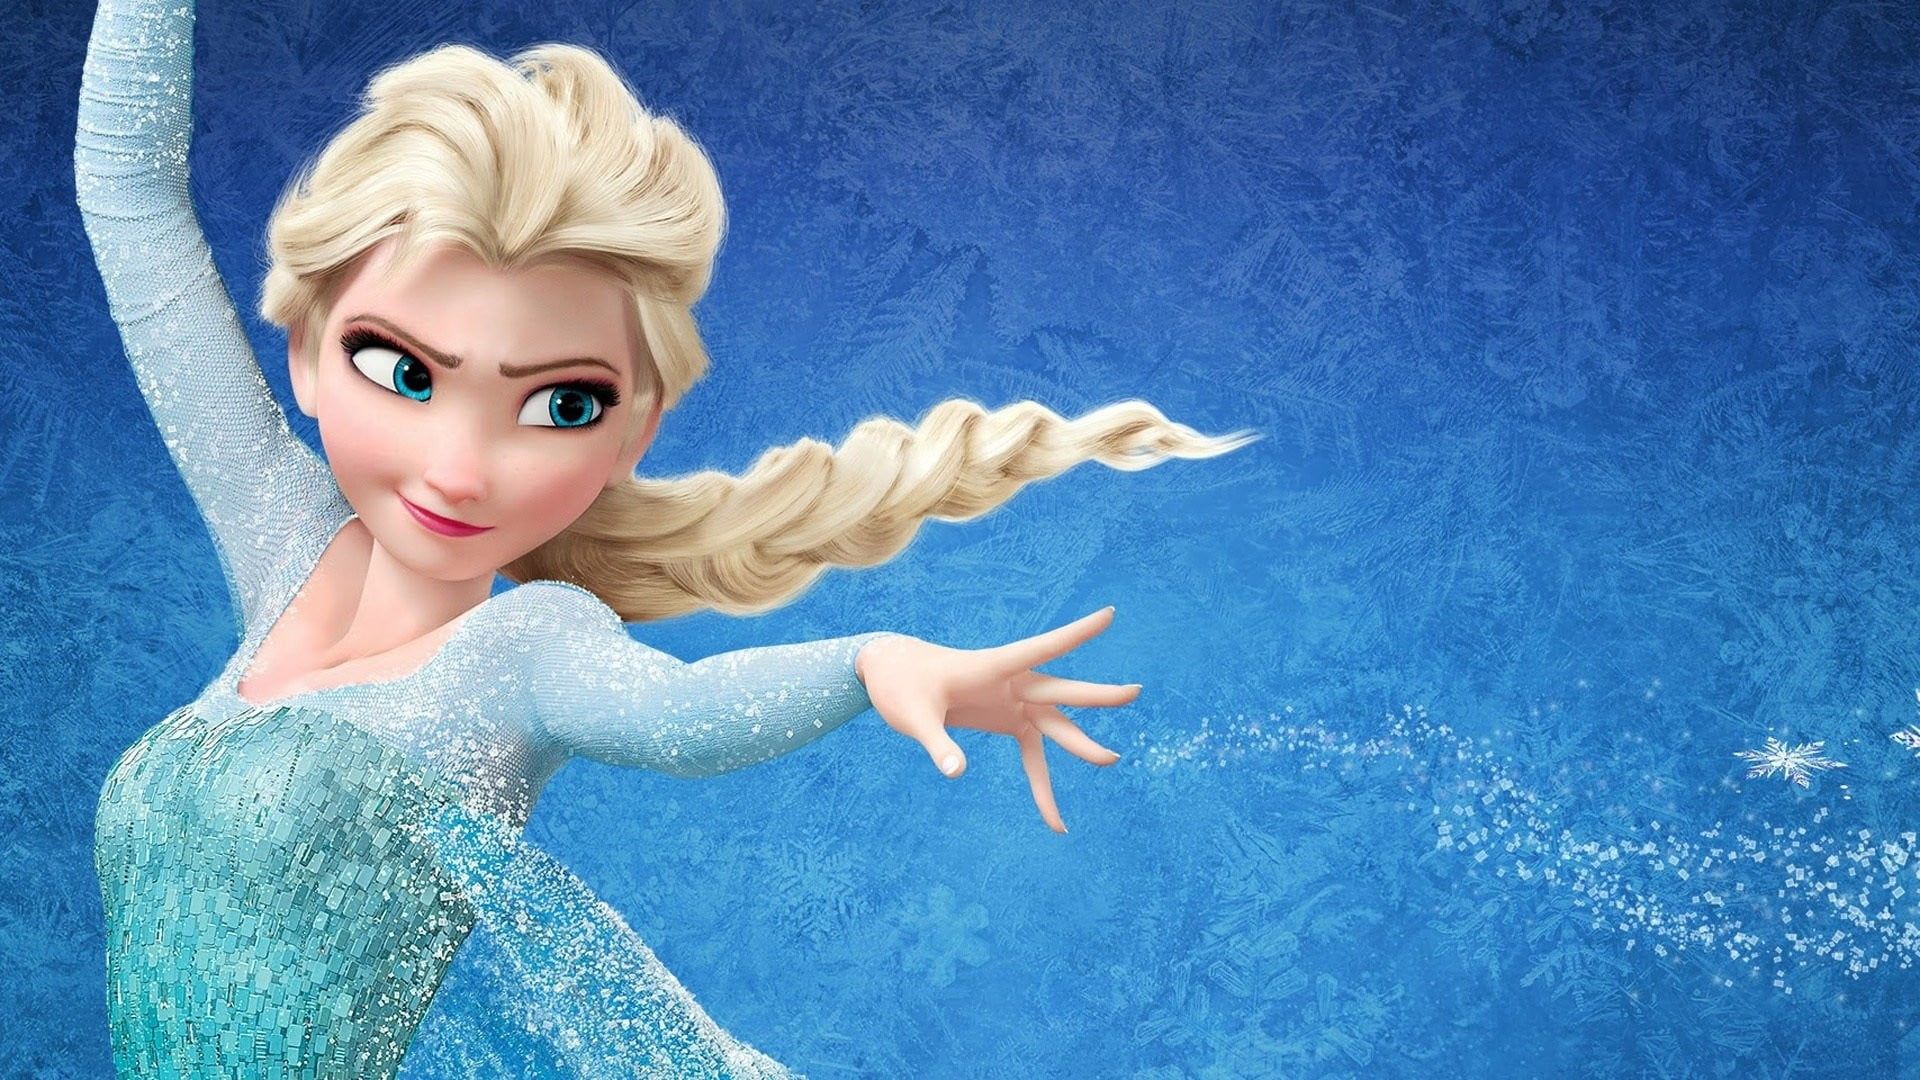 Disney Frozen Queen Elsa, movies, Princess Elsa, Frozen movie